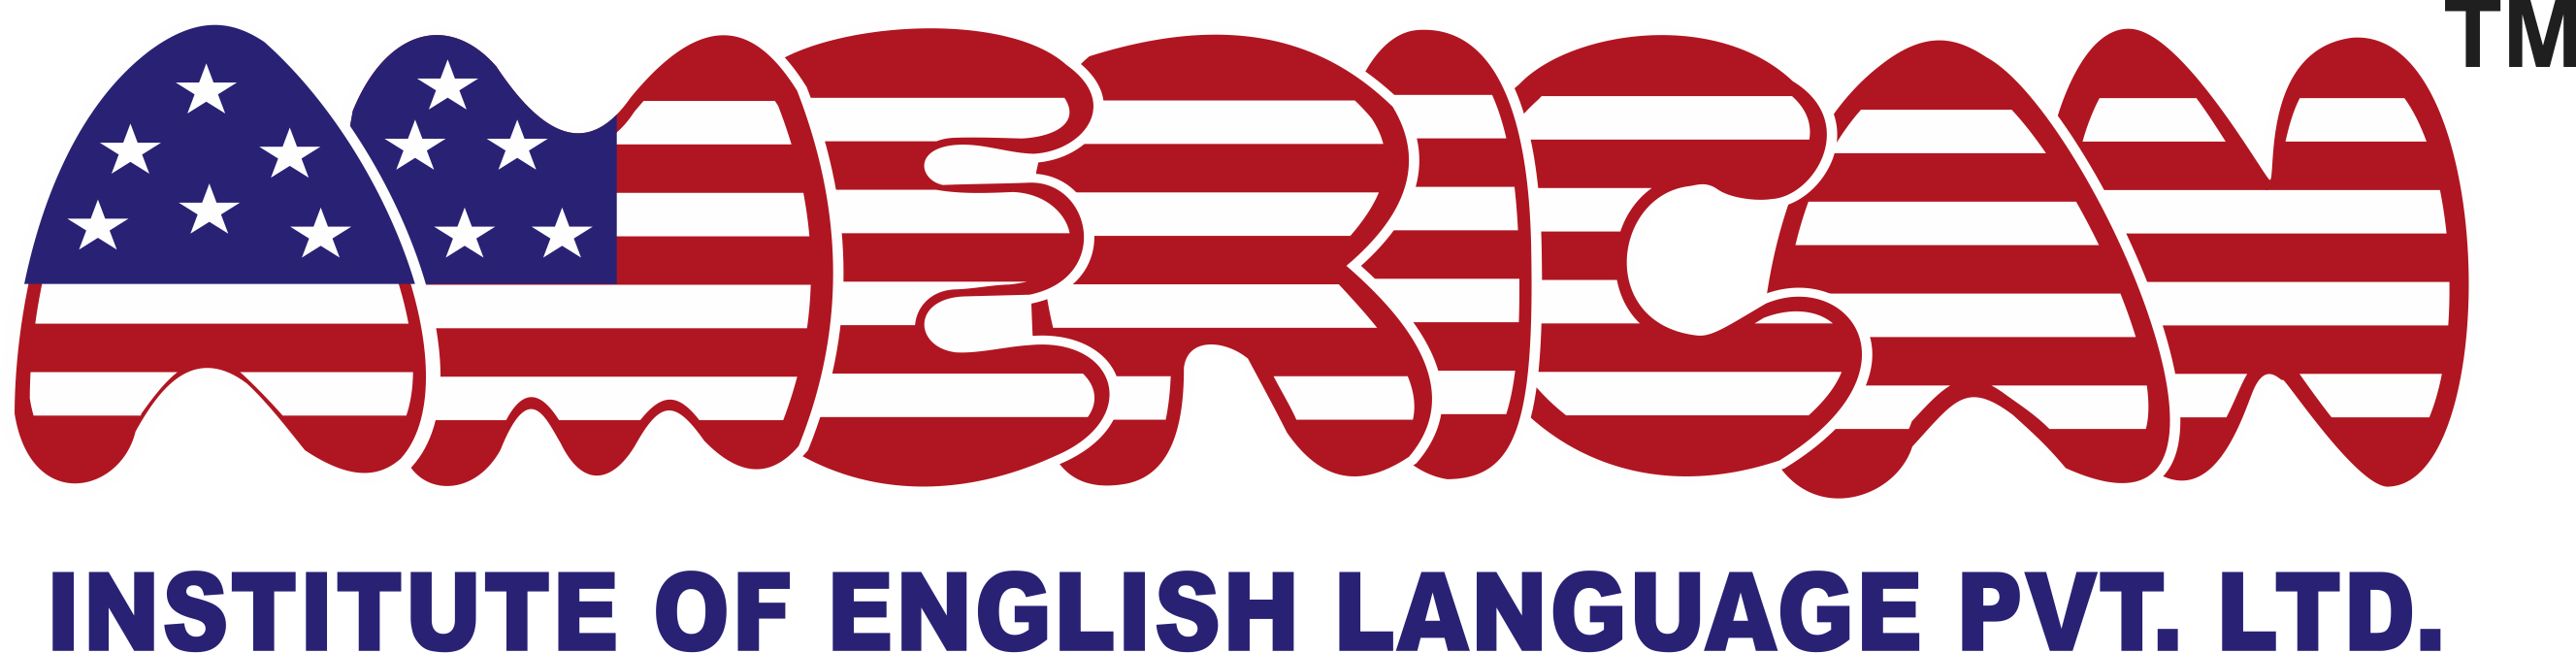 American Institute of English Language